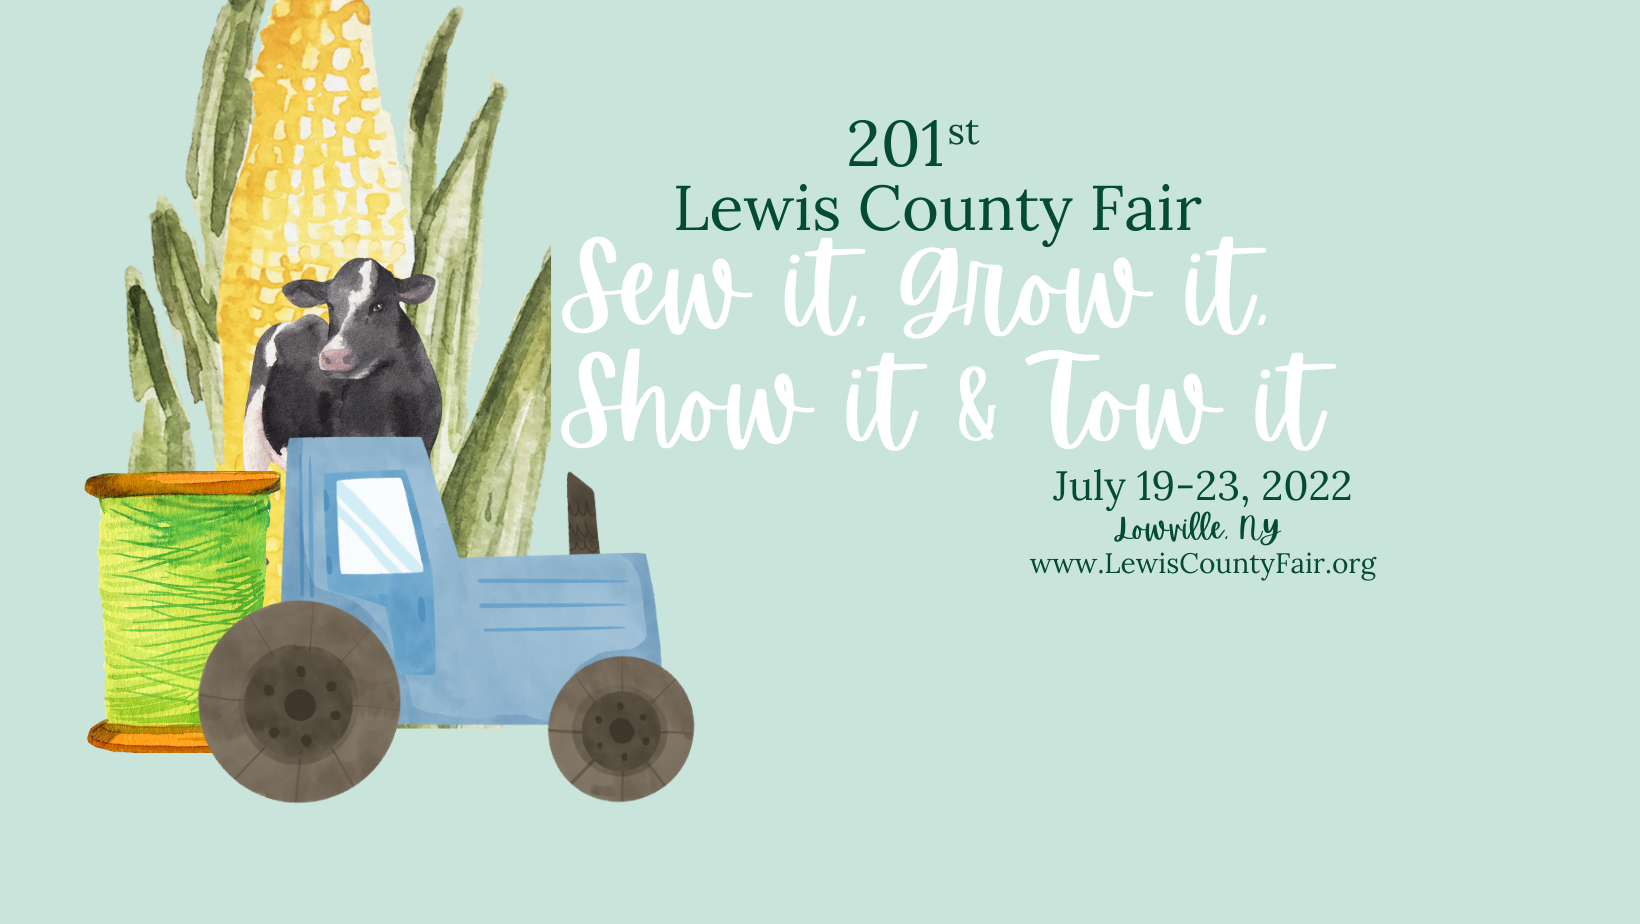 Lewis County Fair 2022 Theme